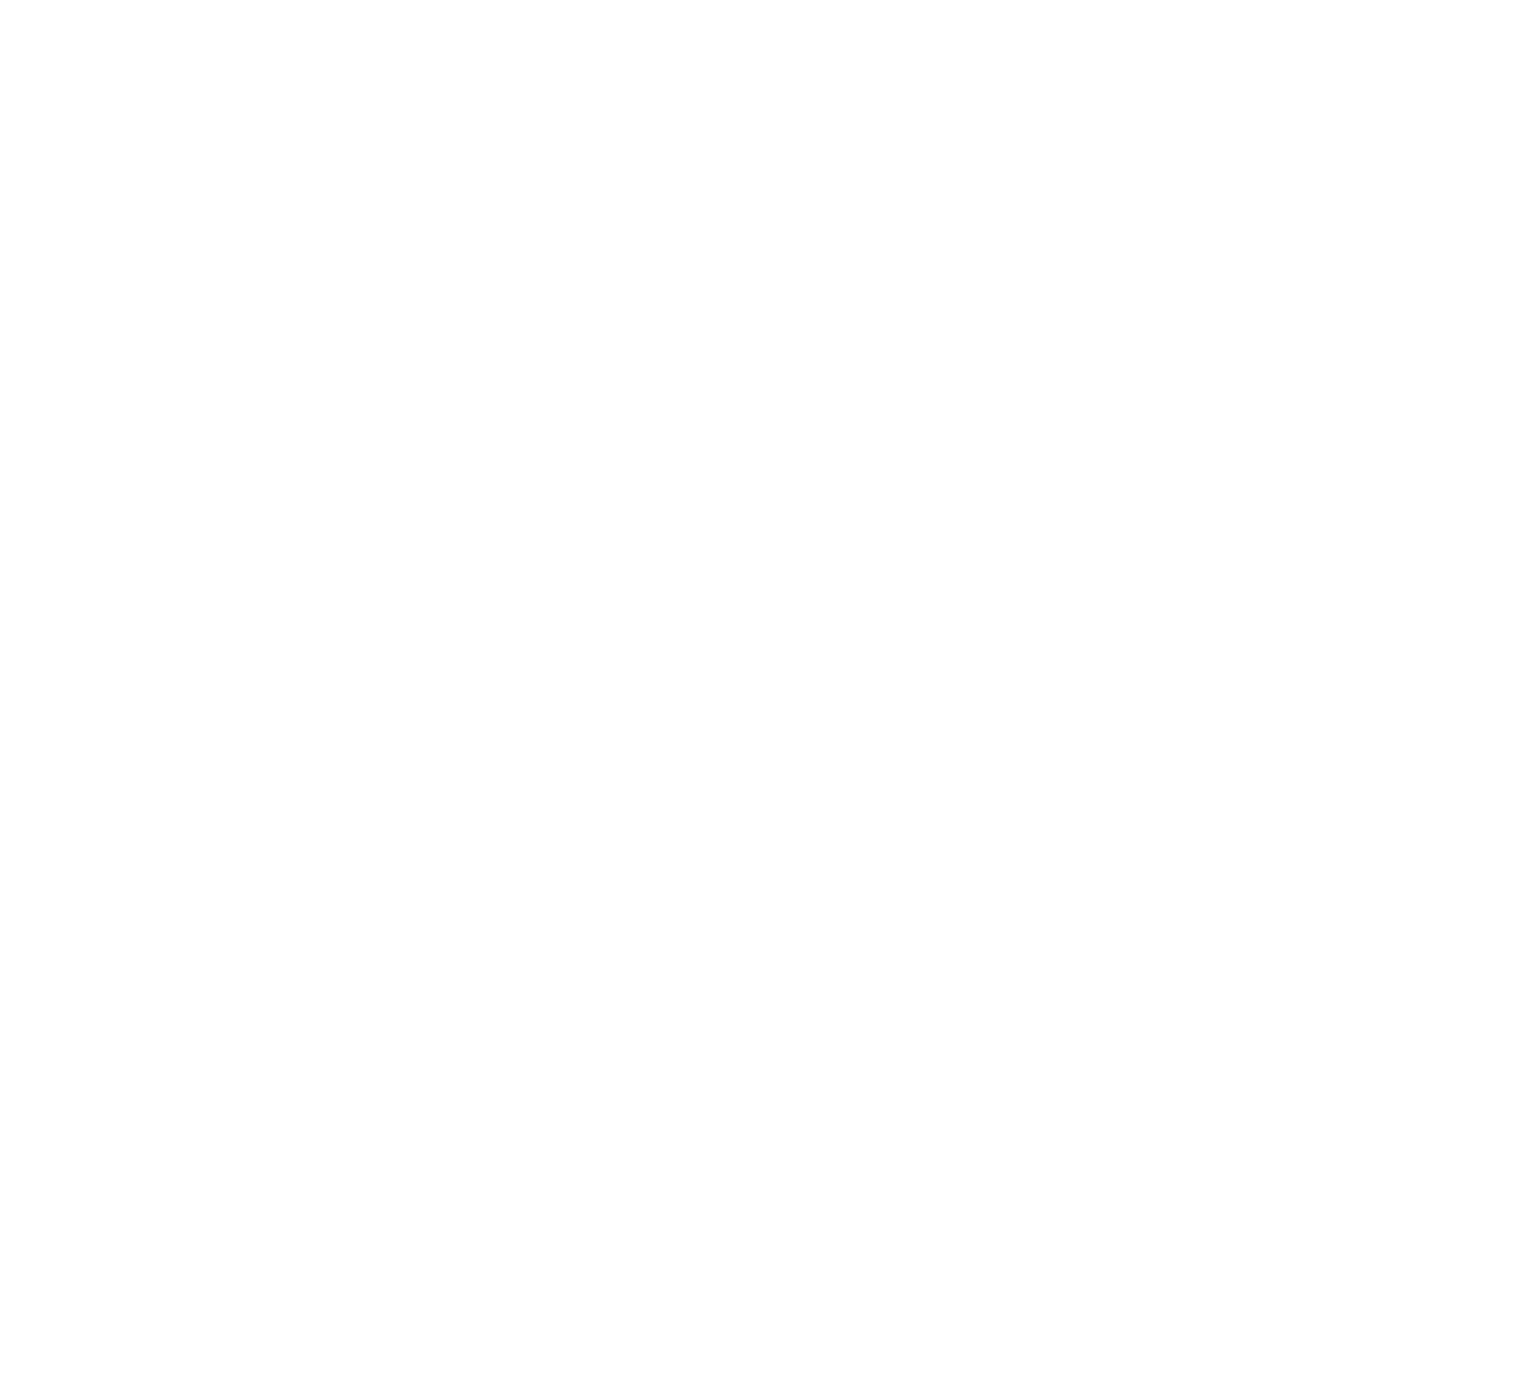 Carnival Corporation logo for dark backgrounds (transparent PNG)